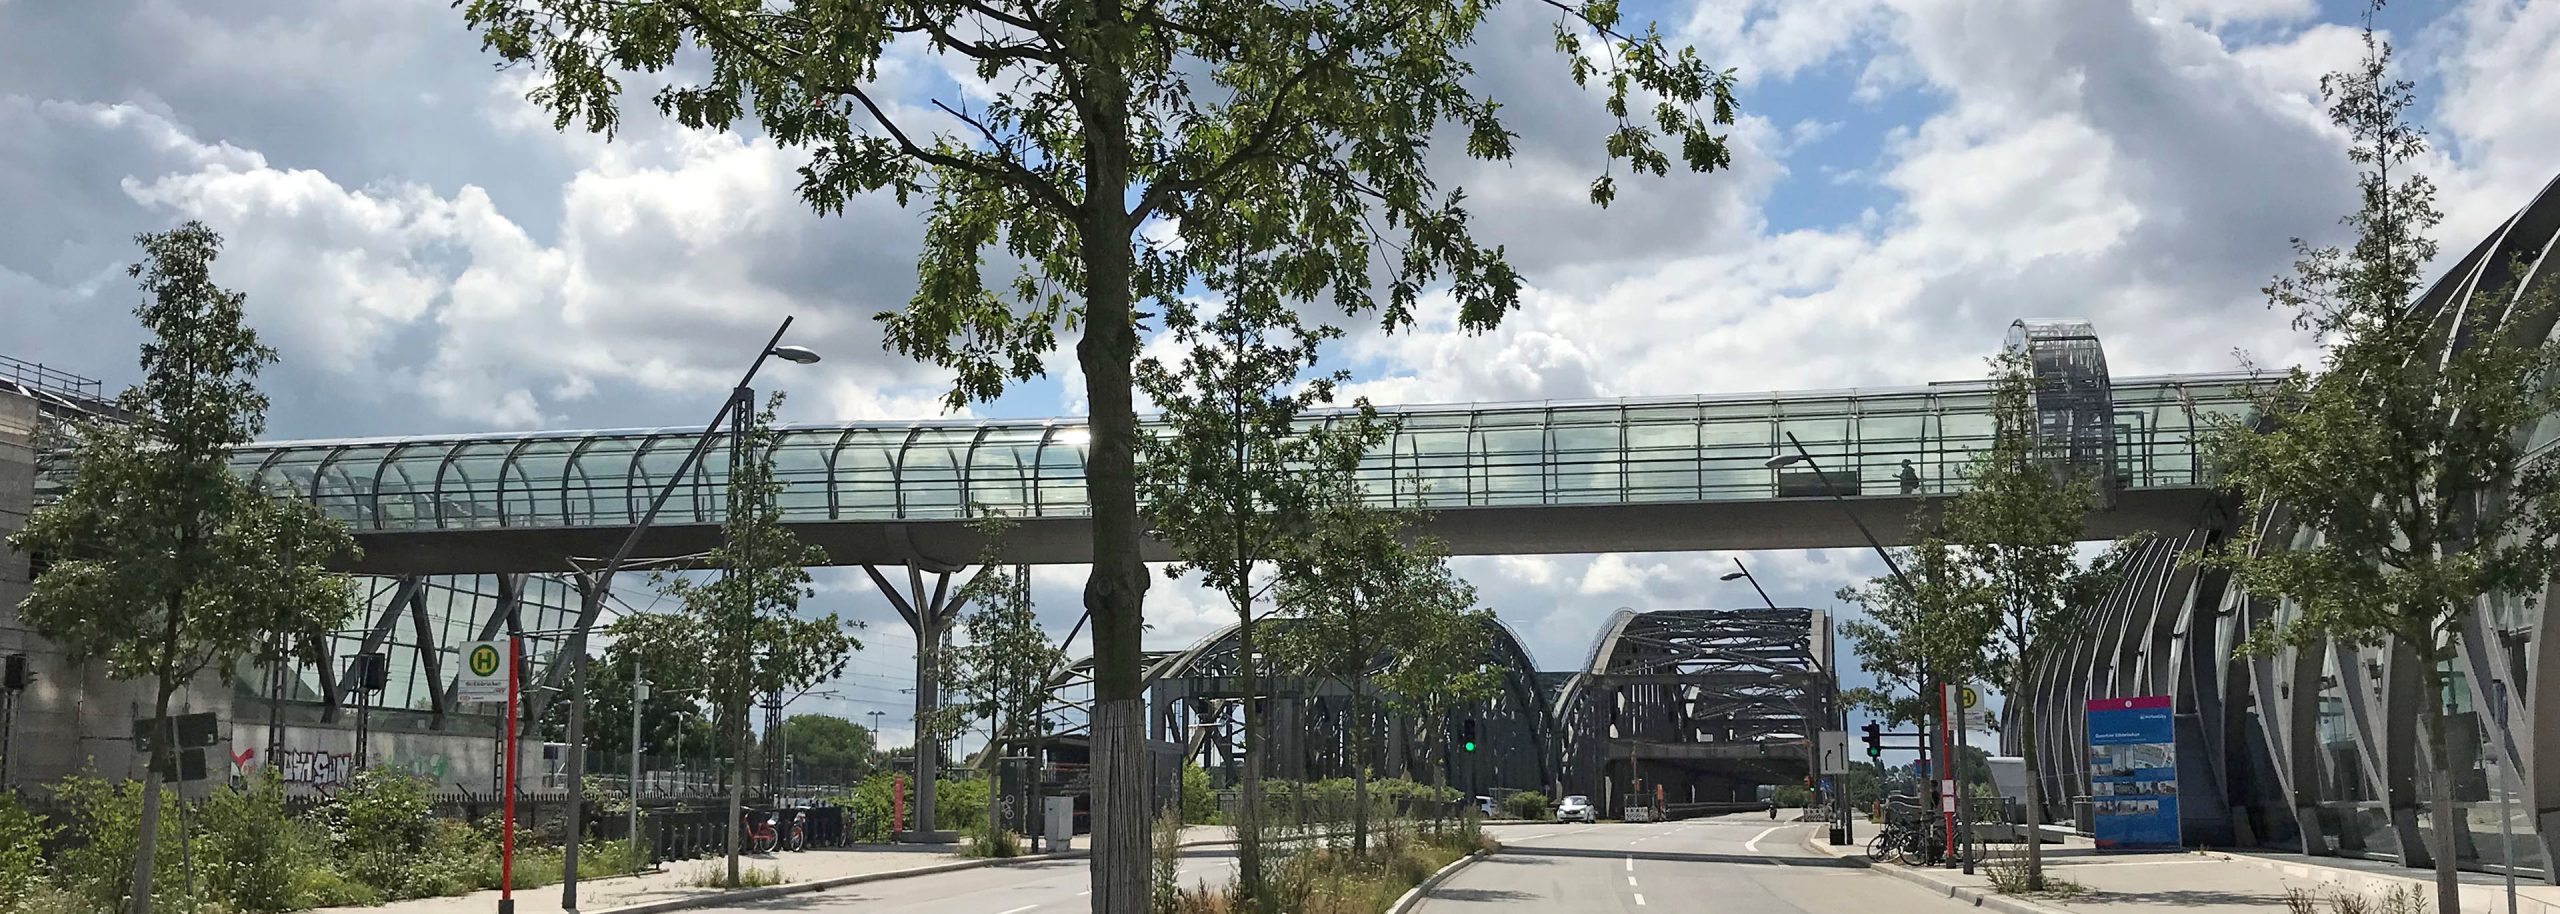 Hamburg Hochbahn Verbindungsbrücke Heroslider Header